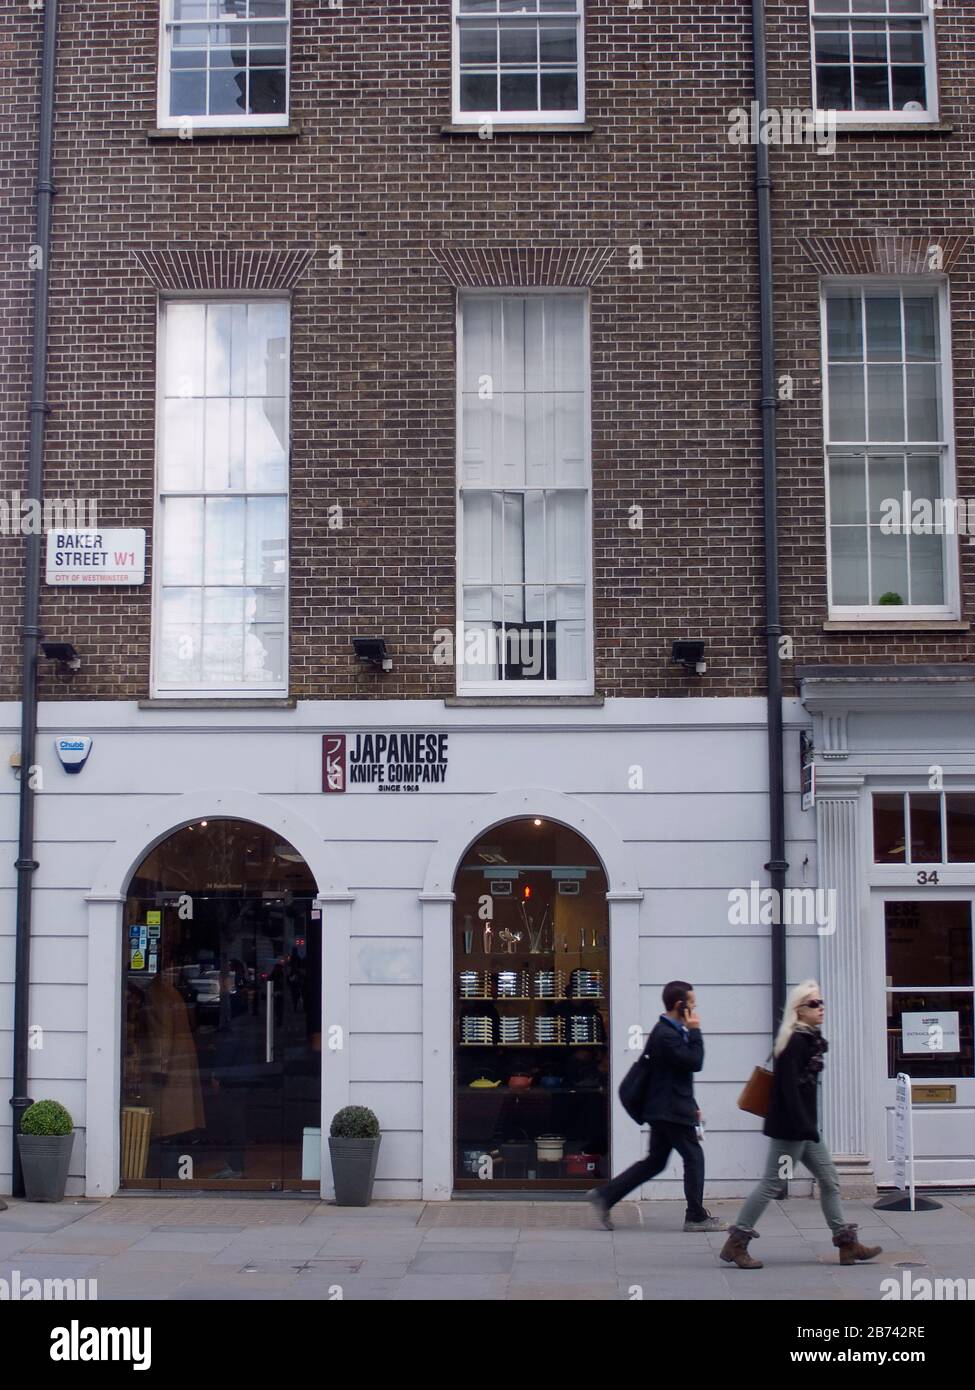 Inghilterra, Londra, Westminster, Baker Street, cartello all'esterno dell'edificio del negozio di coltelli giapponesi. Foto Stock